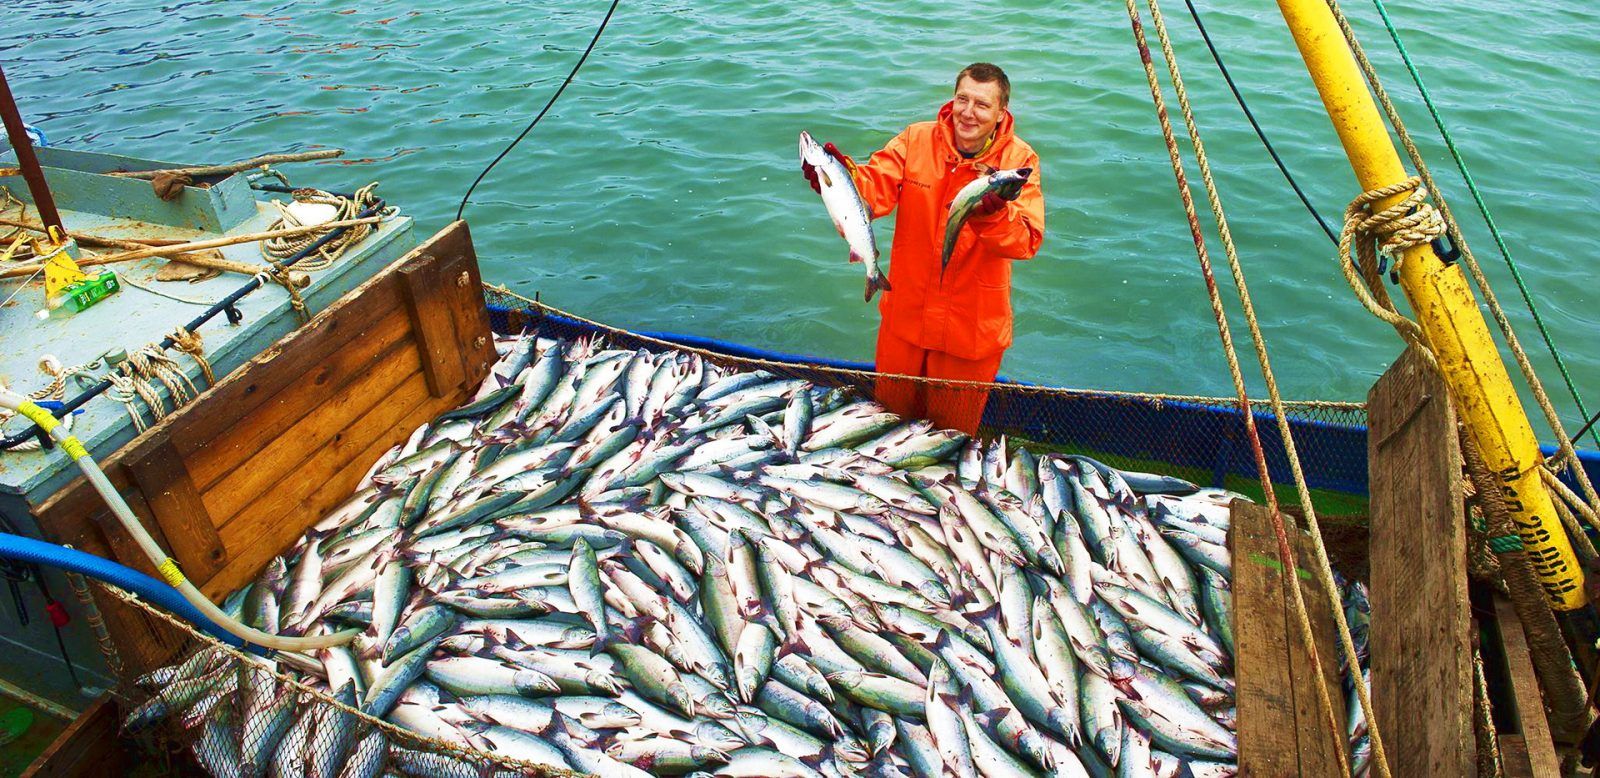 На Сахалин едут не только ради удивительной природы, но, чтобы попробовать и вкуснейшую рыбу. В морях водятся горбуша, кижуч, камбала, кета, минтай, терпуг и многие другие обитатели. Всего почти тысяча различных видов, в том числе семь краснокнижных. Рыболовная промышленность — основа экономики региона.